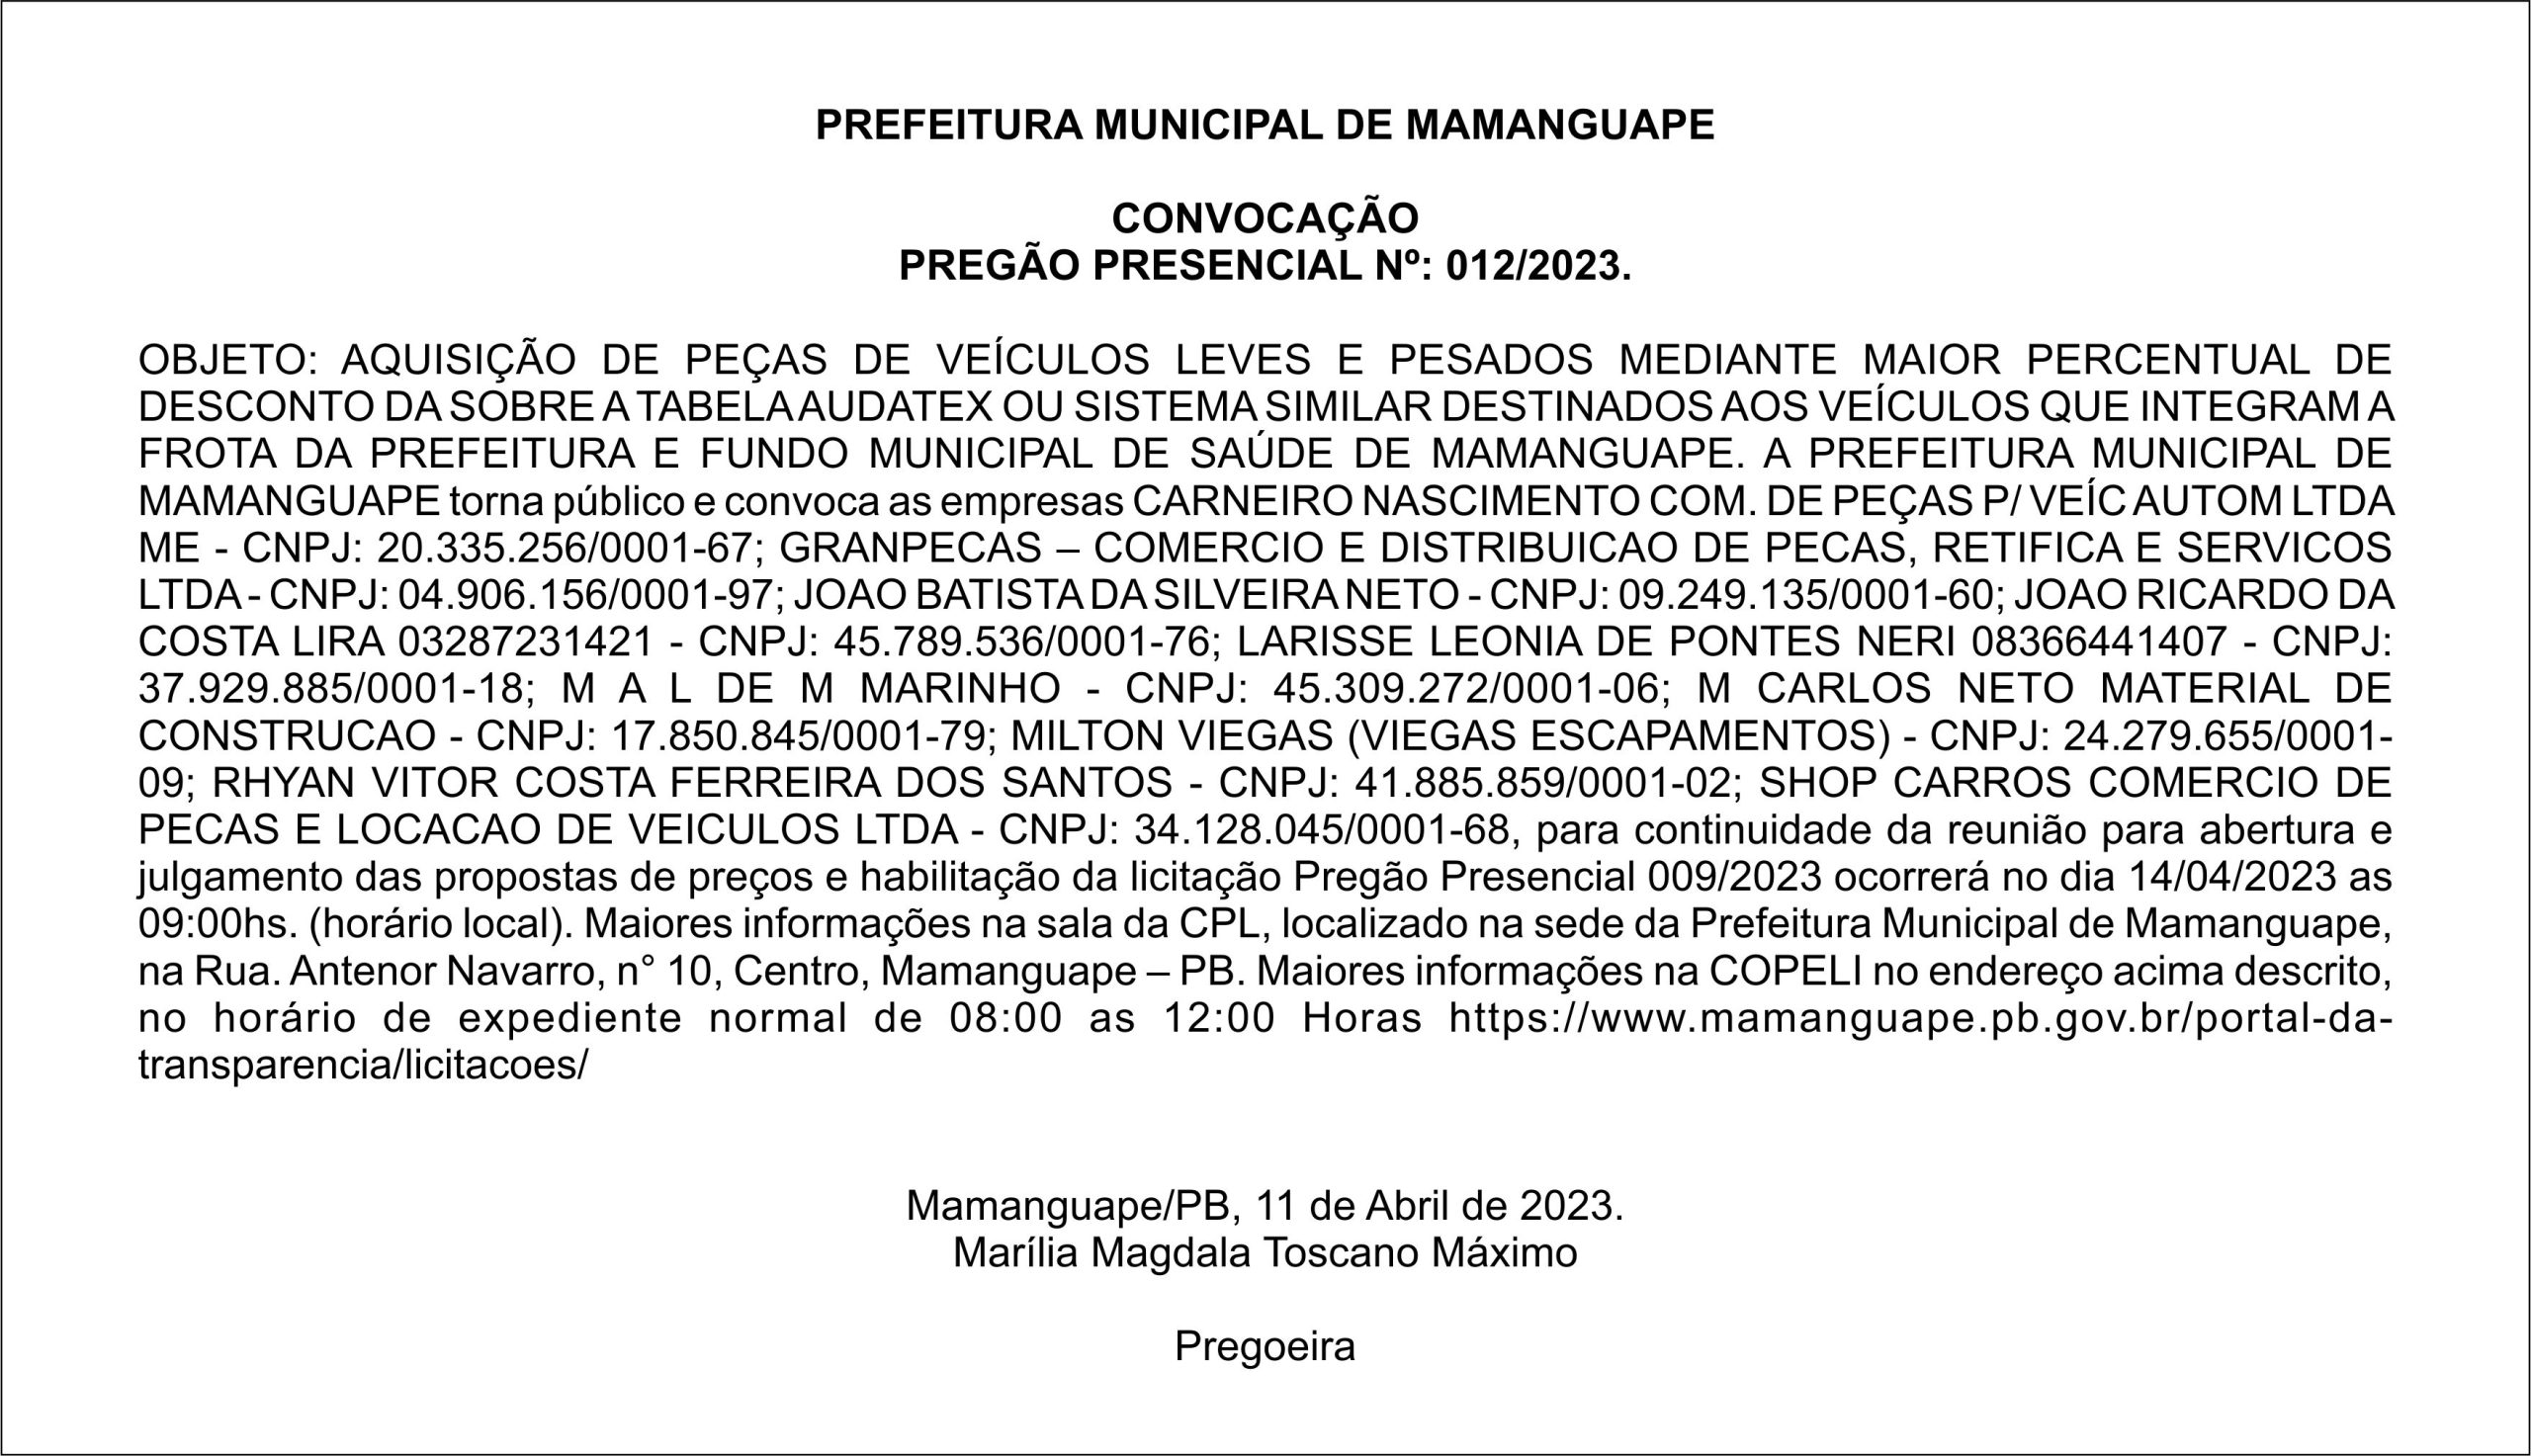 PREFEITURA MUNICIPAL DE MAMANGUAPE – CONVOCAÇÃO  – PREGÃO PRESENCIAL Nº: 012/2023.